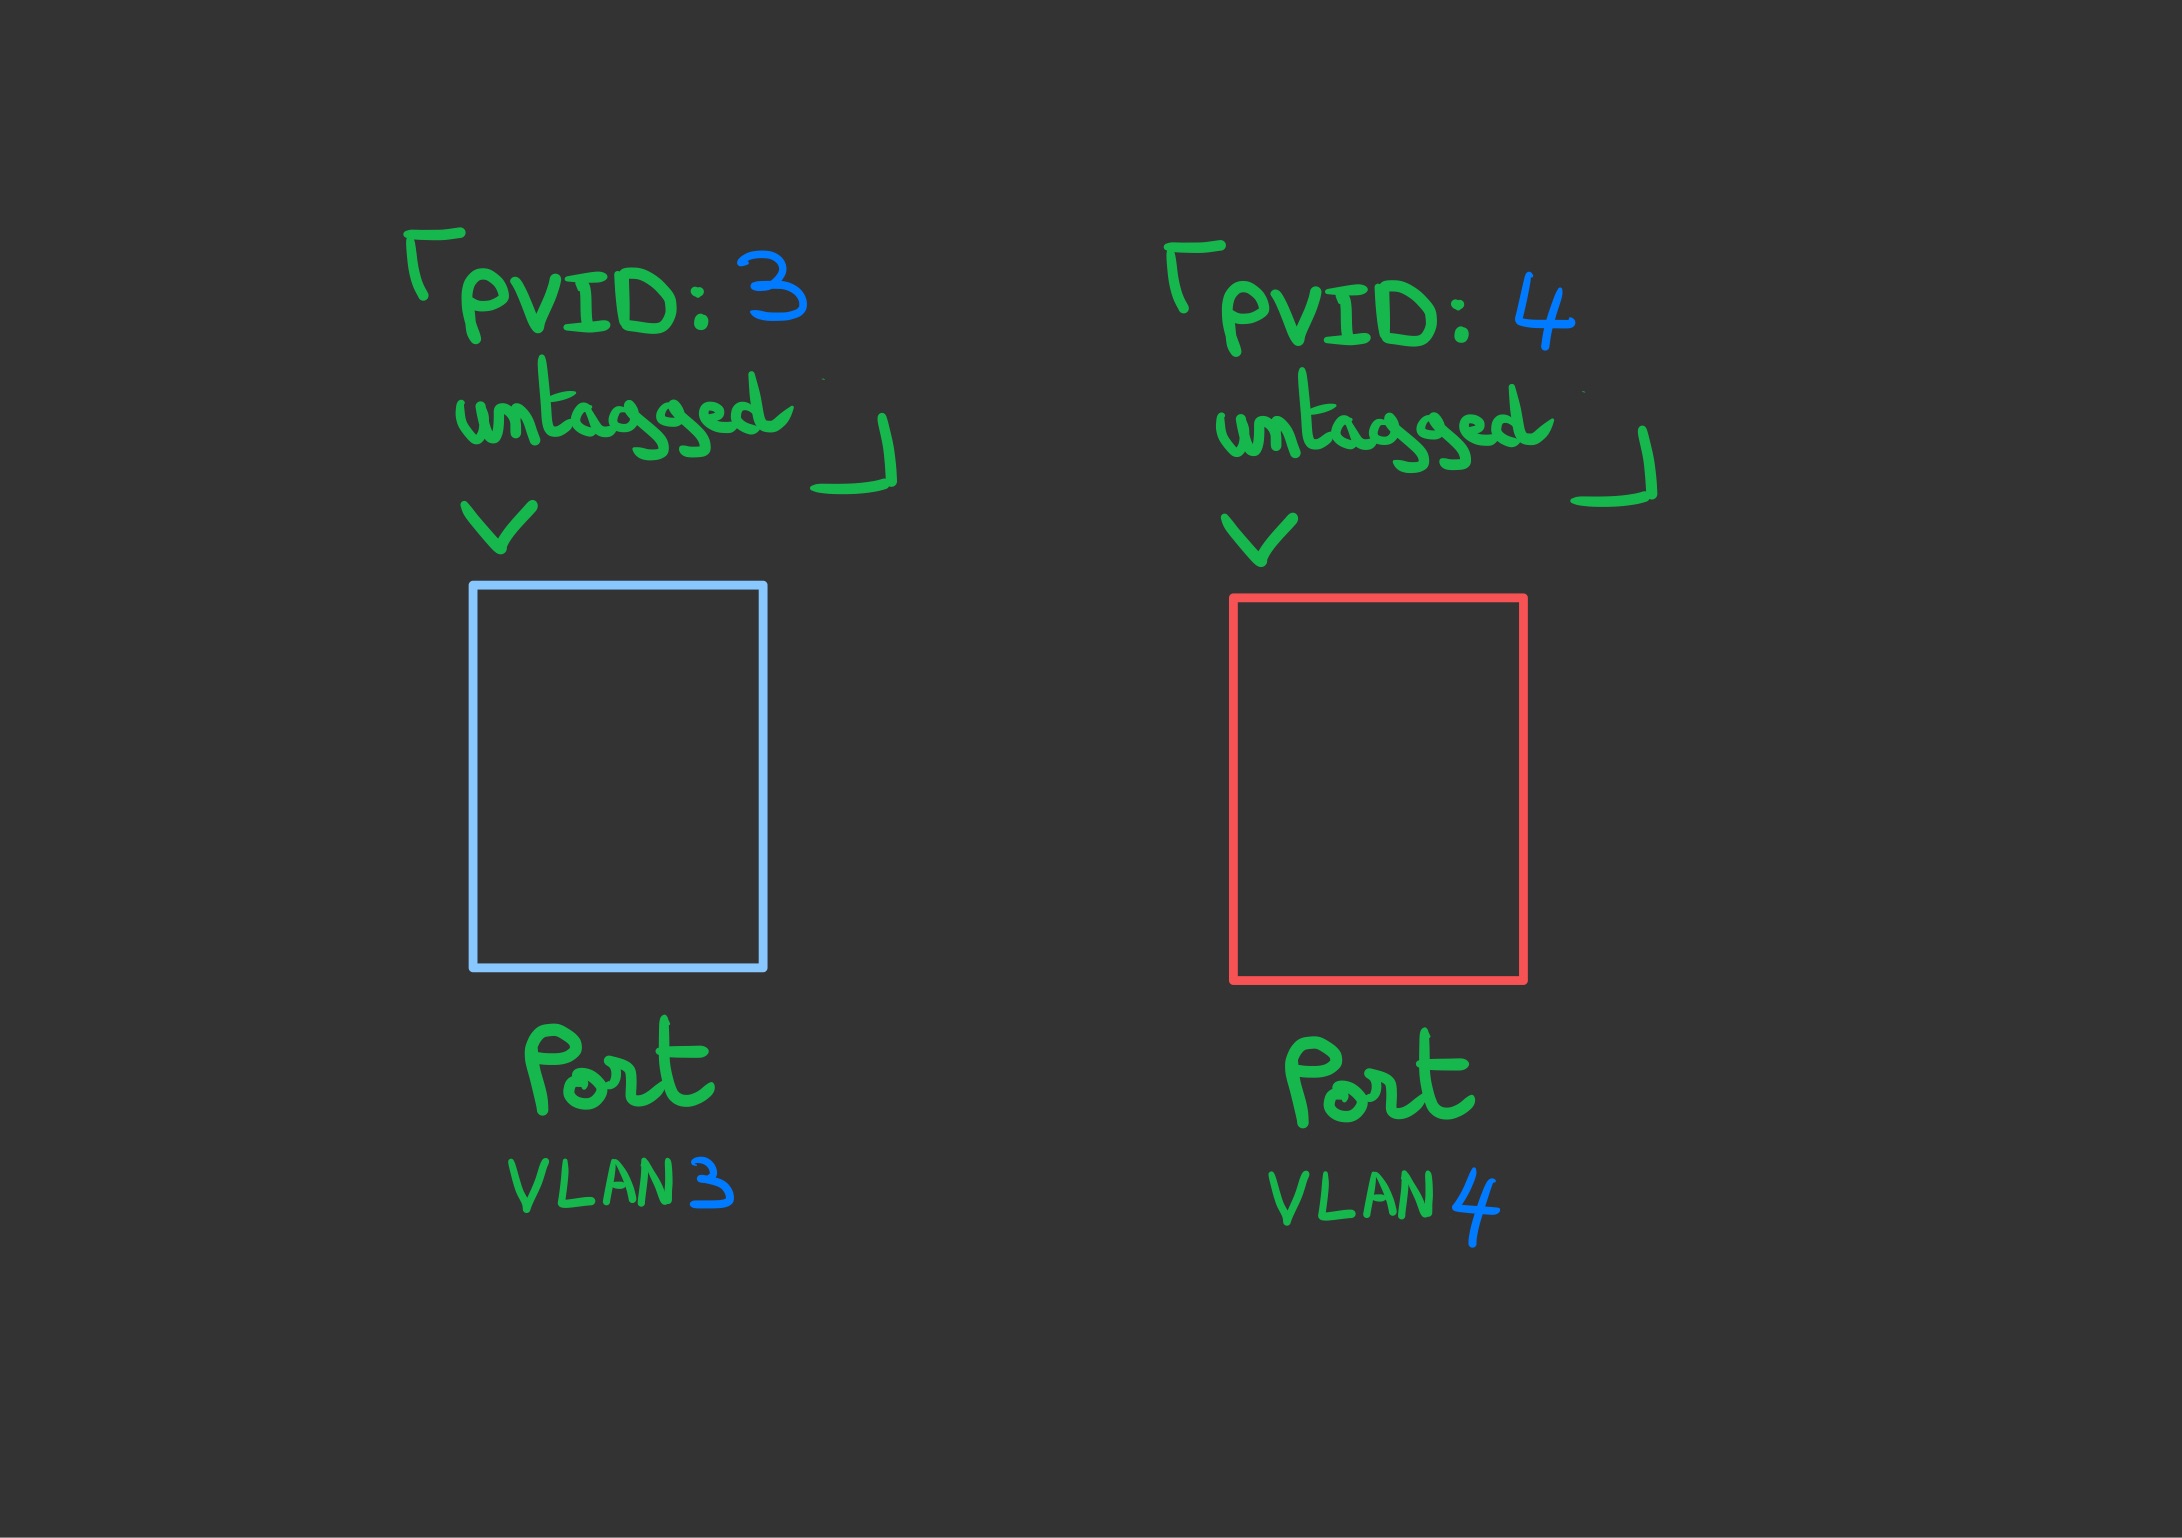 Configuration d'un port rouge en PVID 4 et d'un bleu en PVID 3 tous les deux en untagged